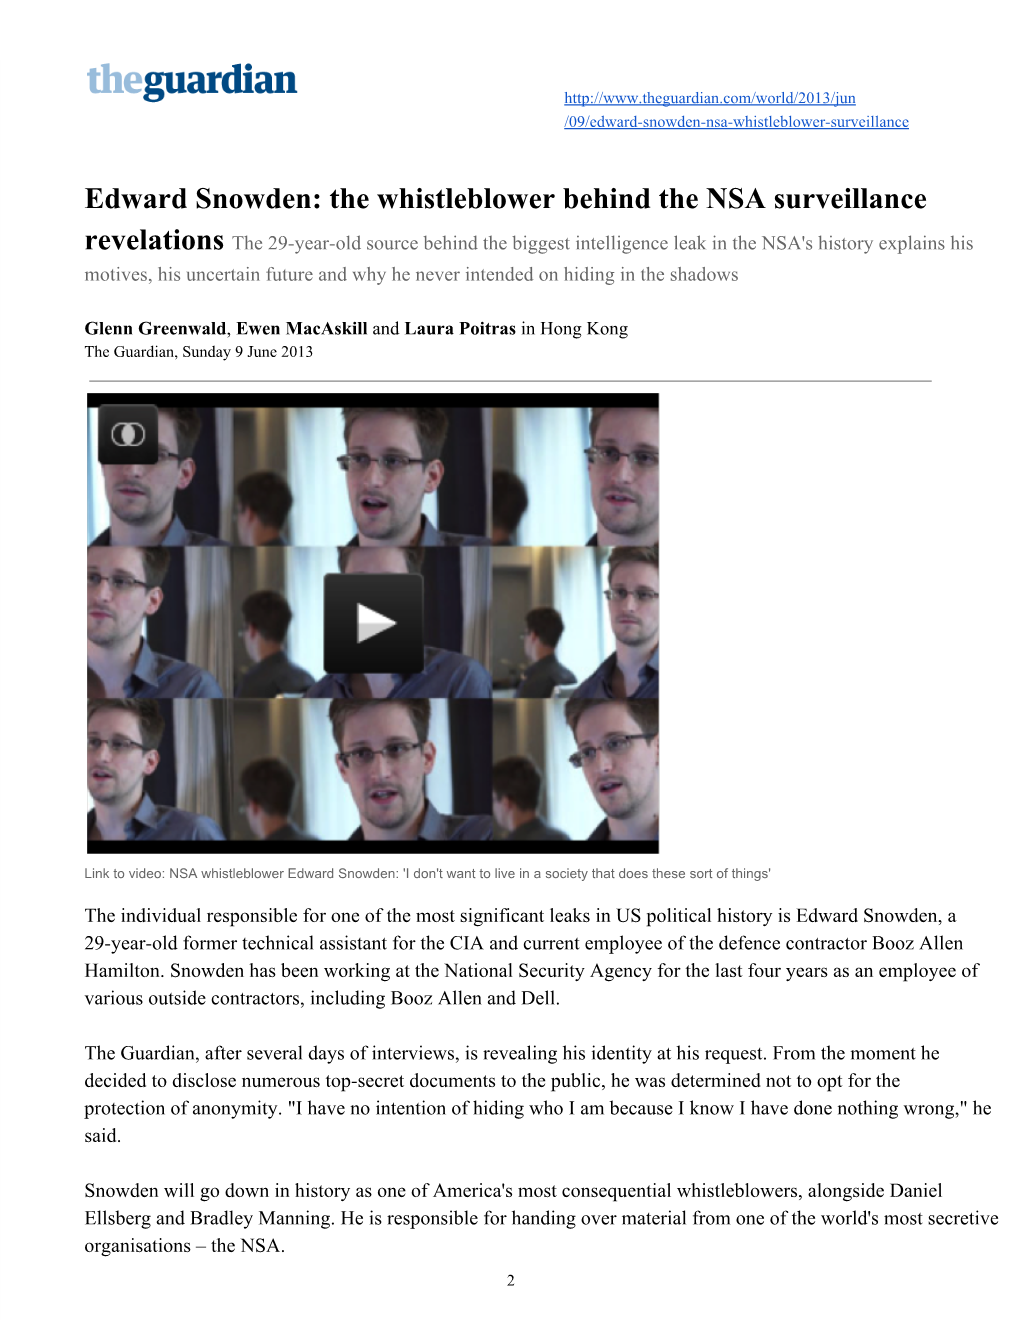 Edward Snowden: the Whistleblower Behind the NSA Surveillance